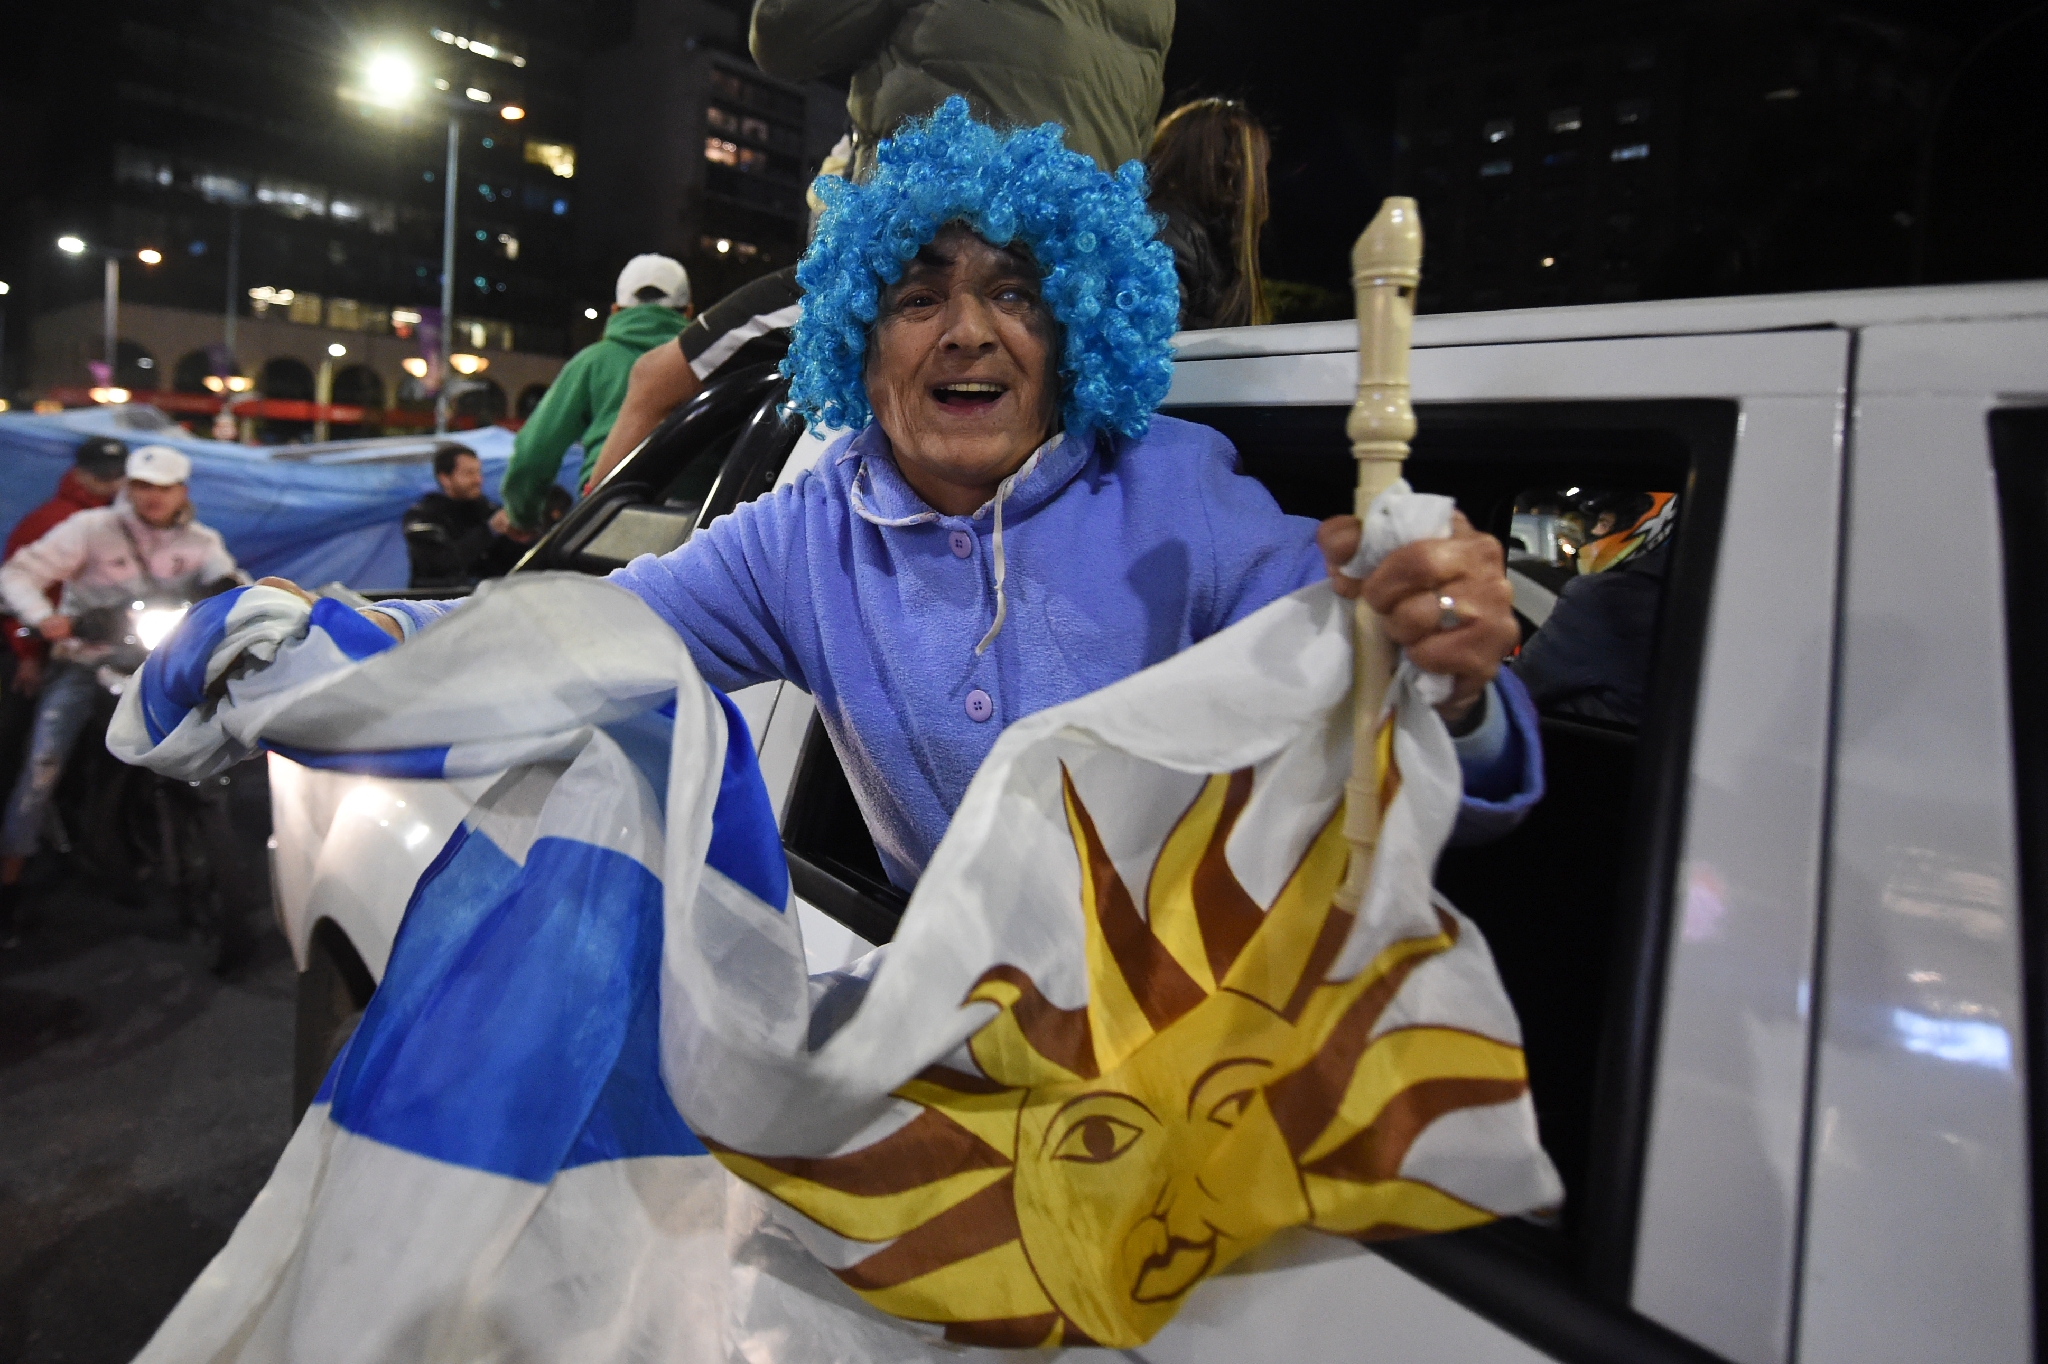 Coupe du Monde 2018 : Les Uruguayens seront plus nombreux que nous, dit  un supporter